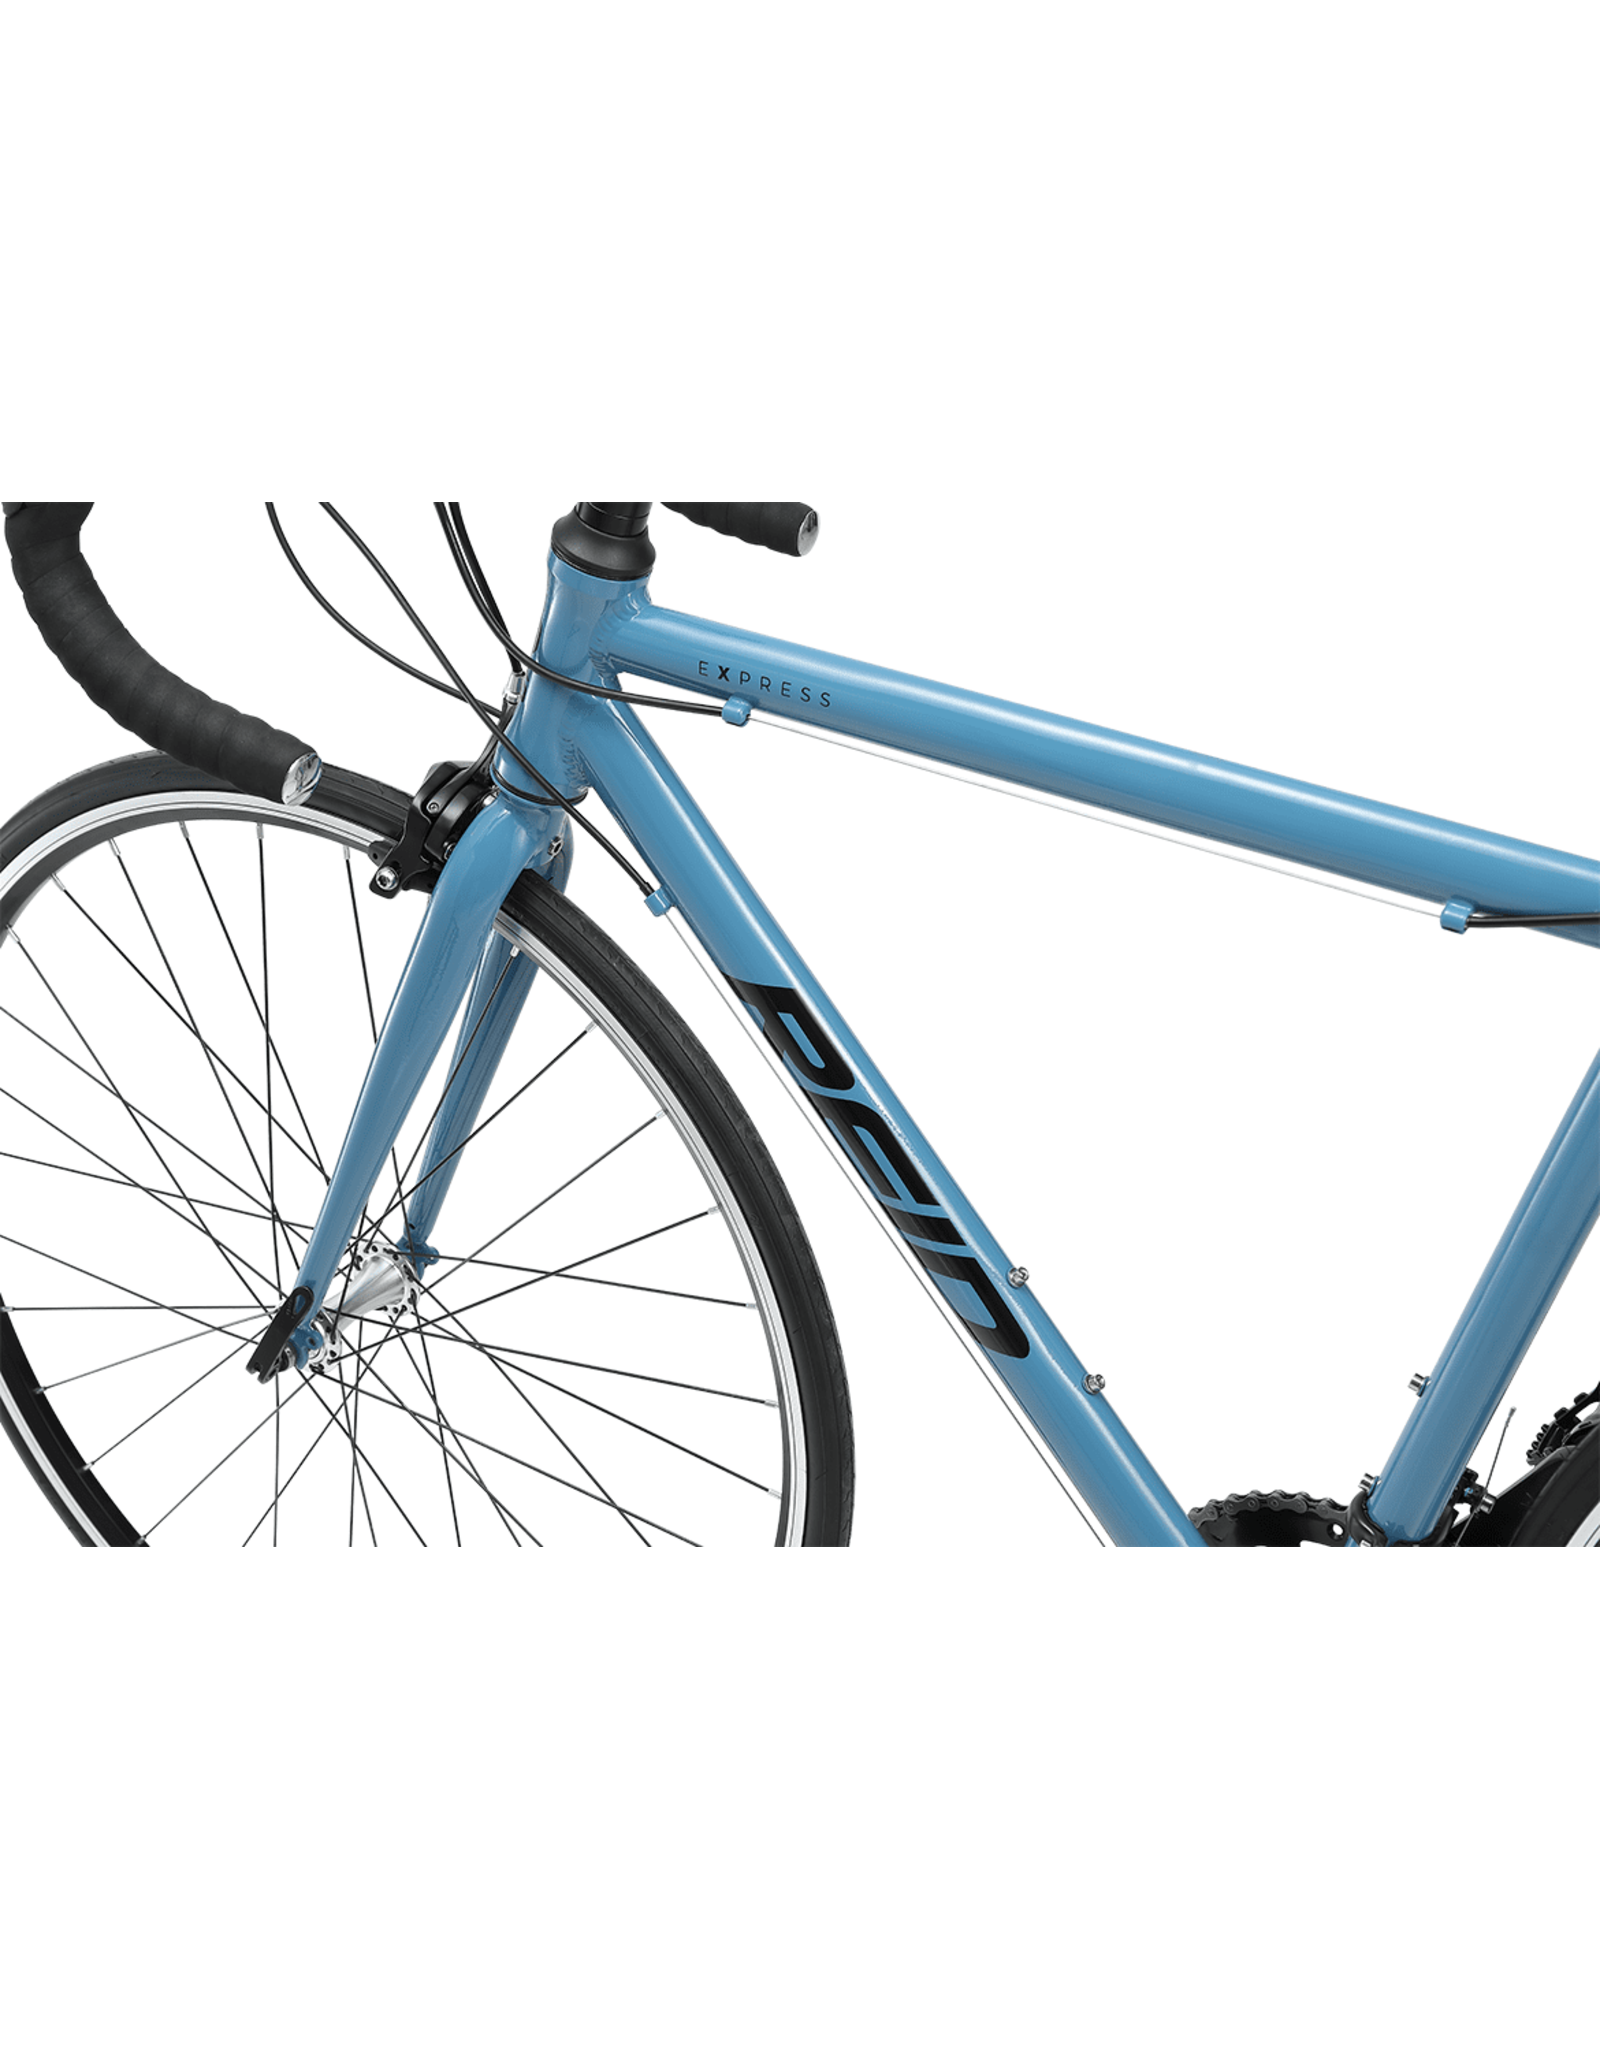 Reid Vélo de route - Express Pure Blue